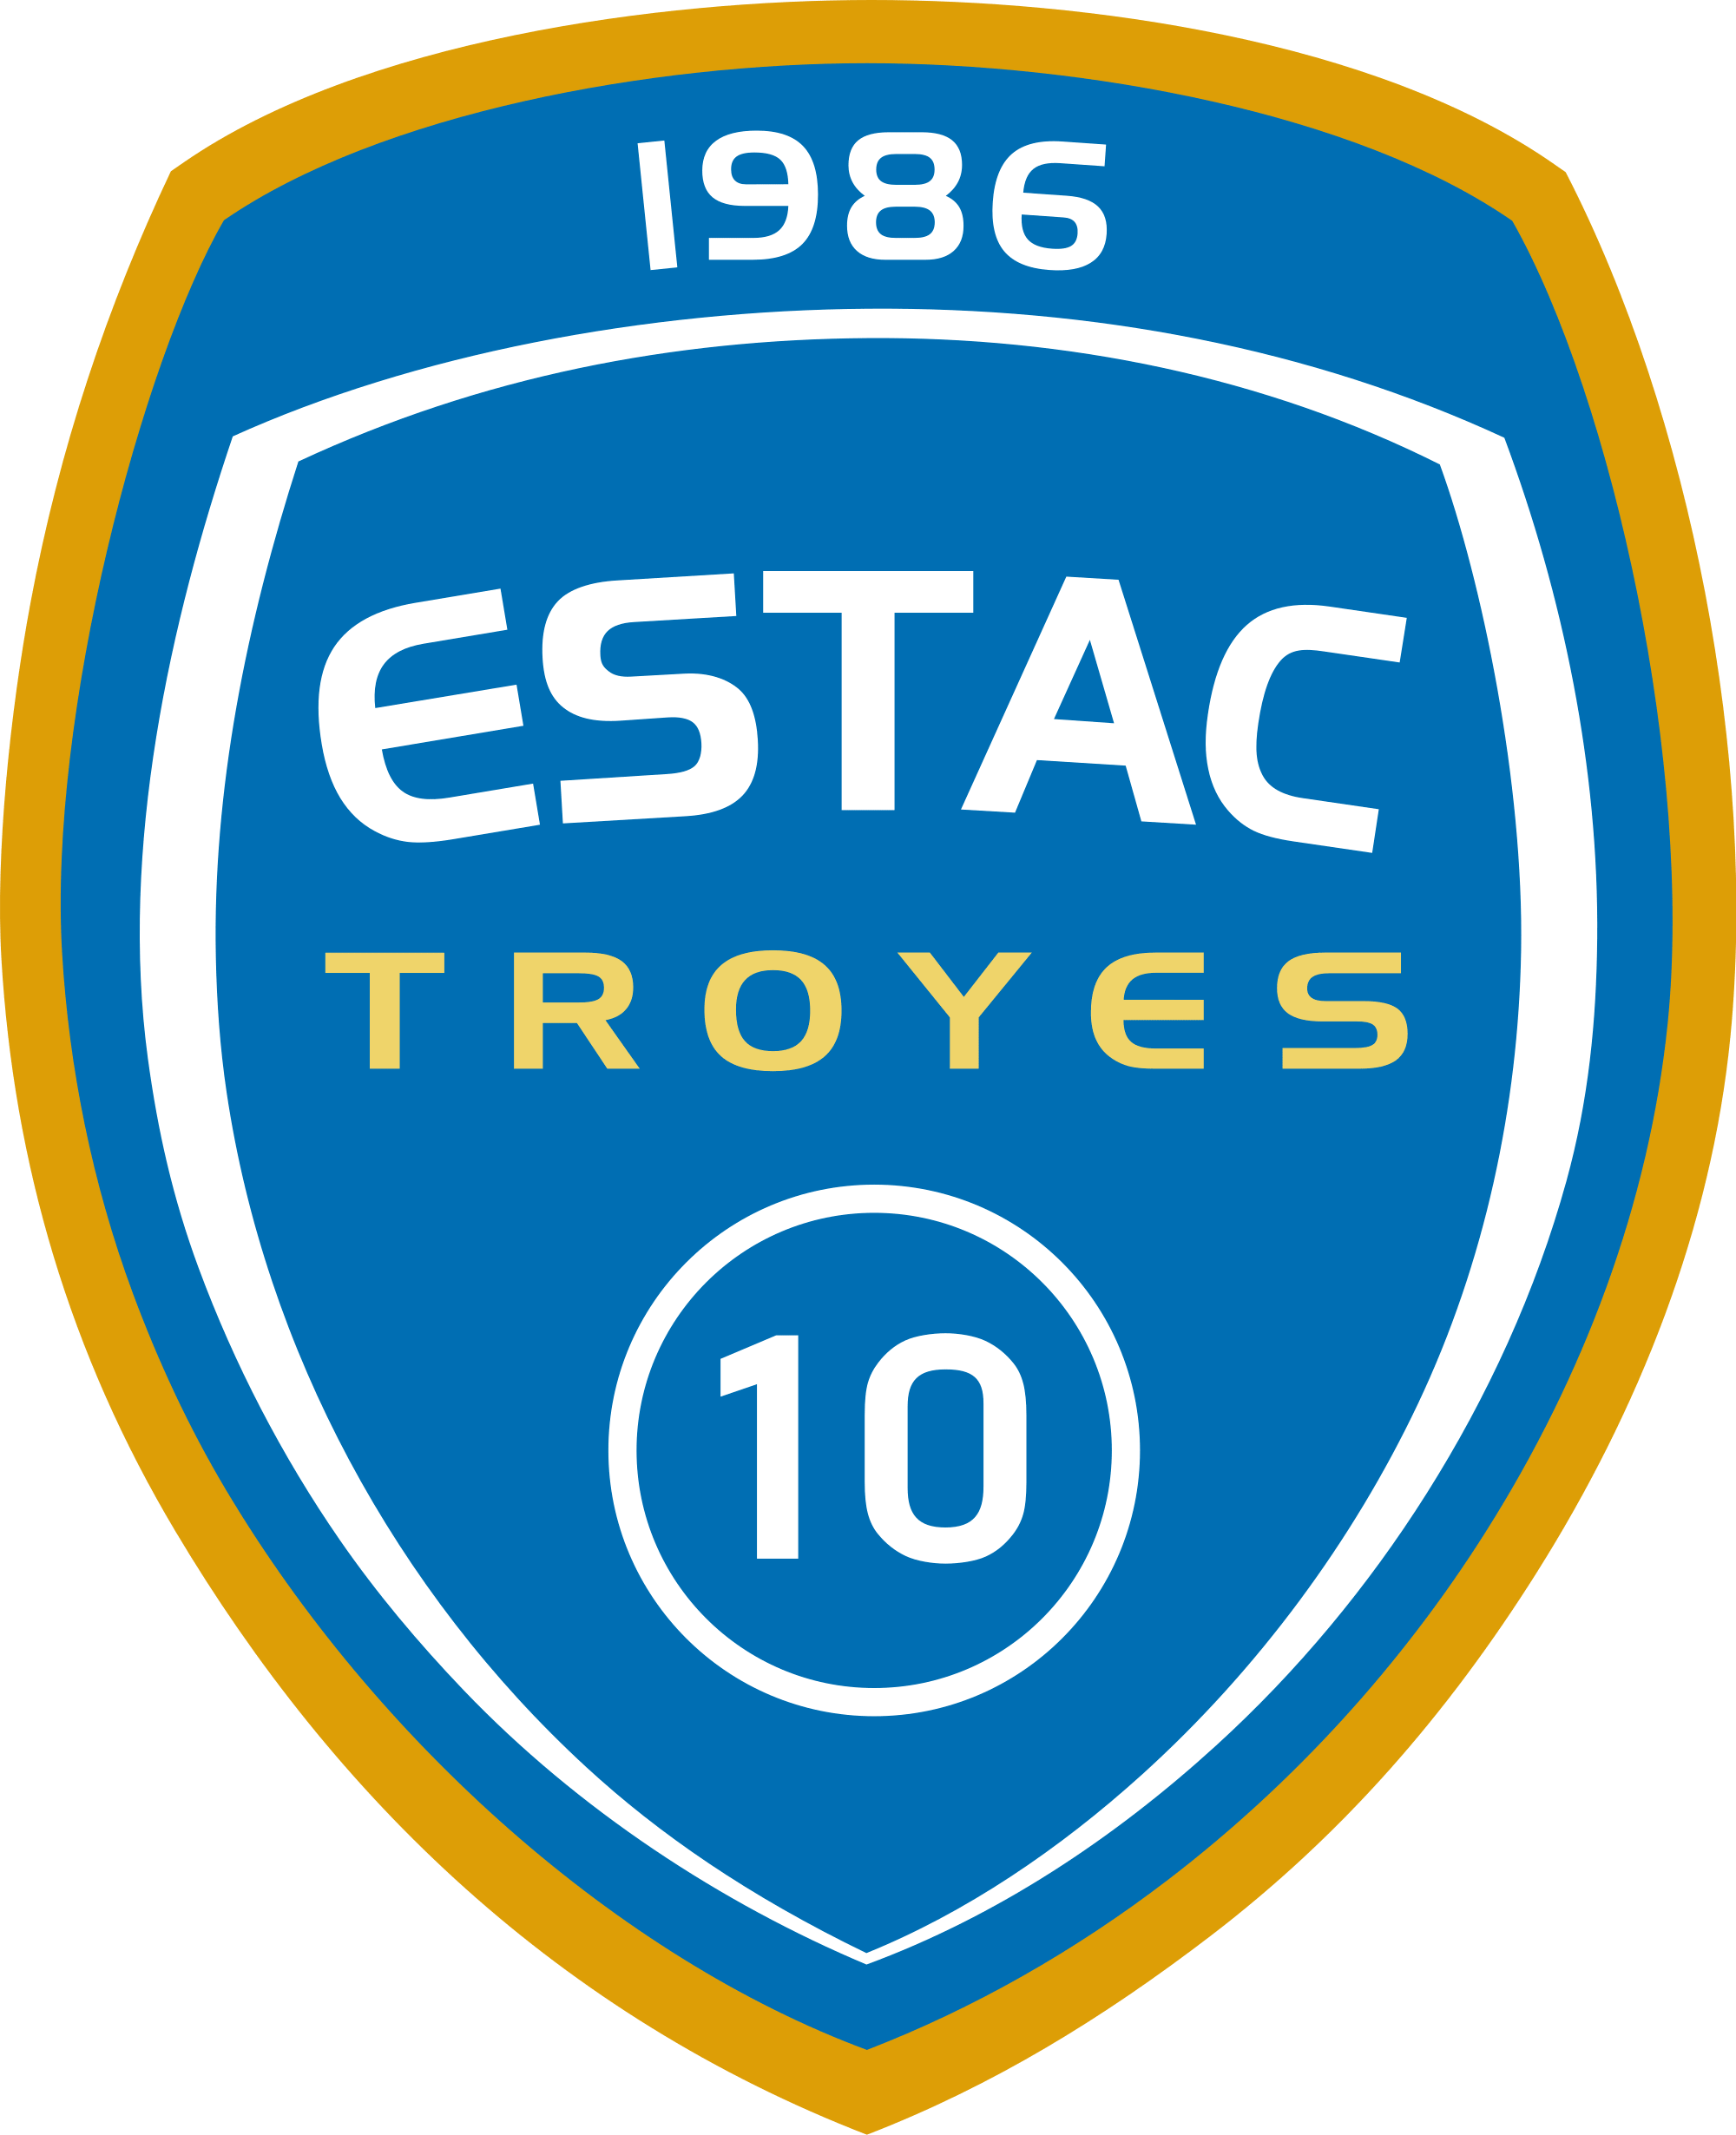 ESTAC Troyes